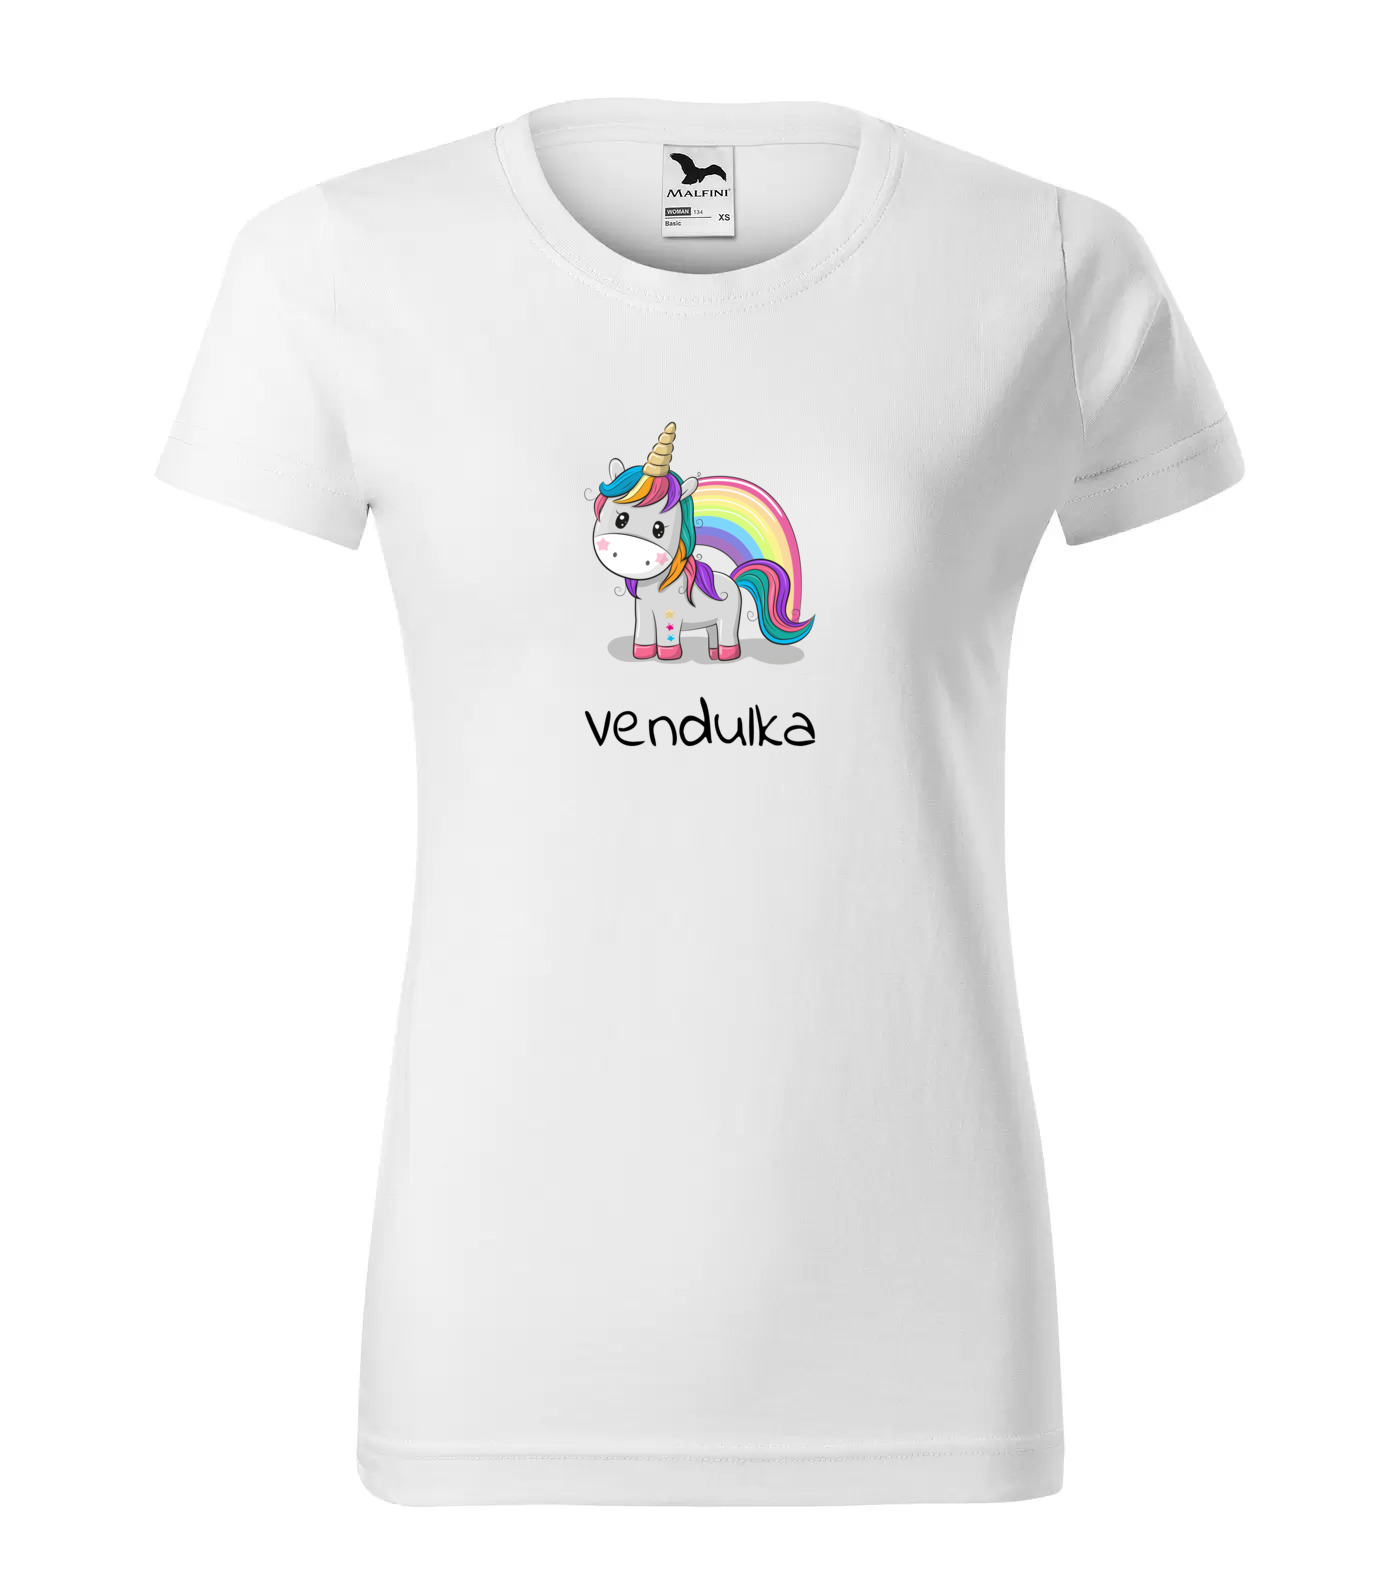 Tričko Jednorožec Vendulka